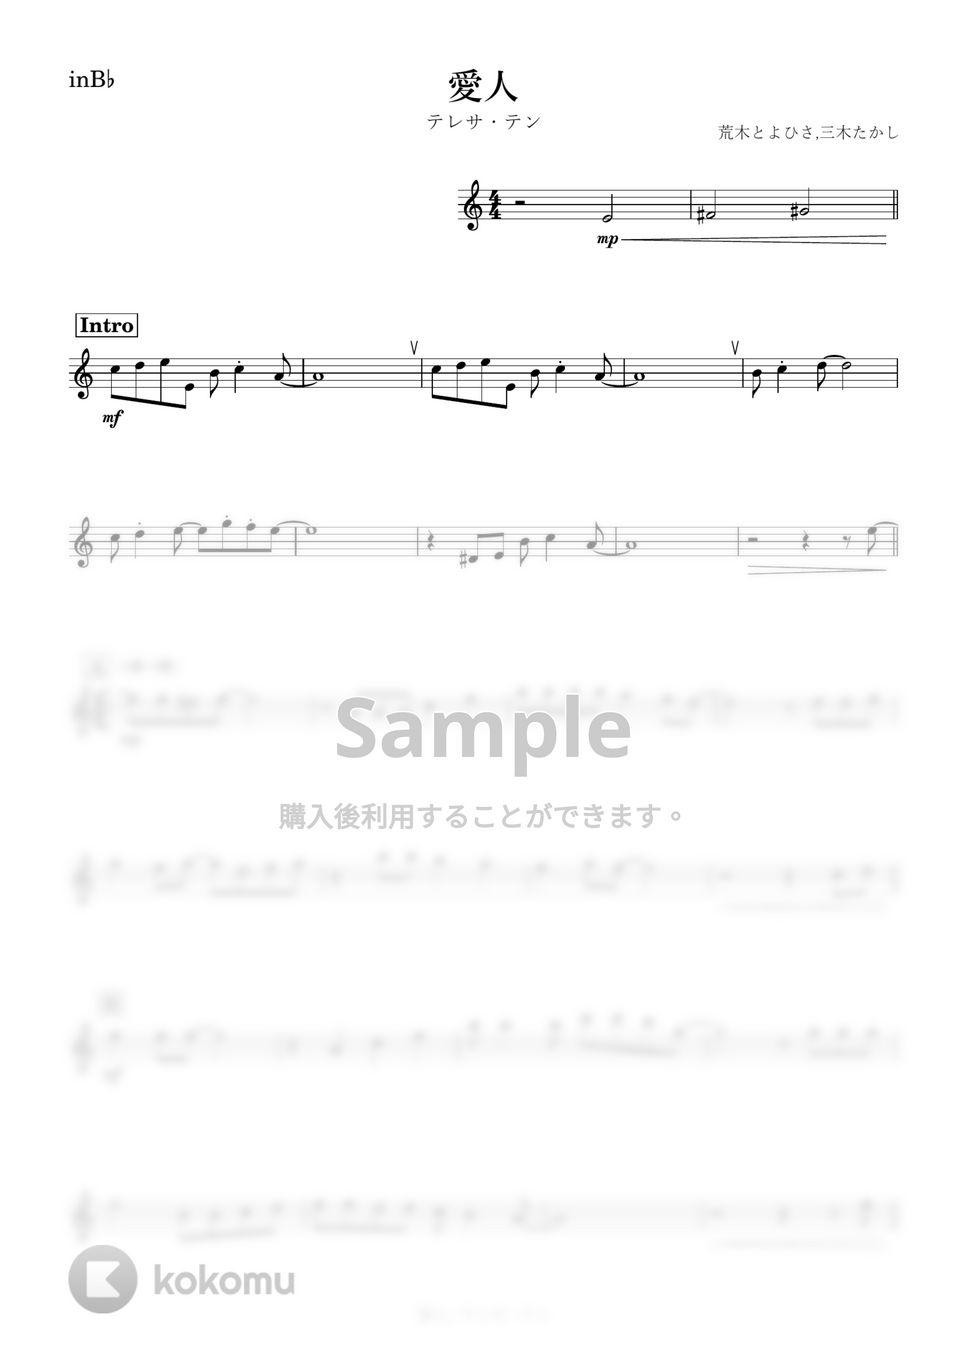 テレサ・テン - 愛人 (B♭) by kanamusic